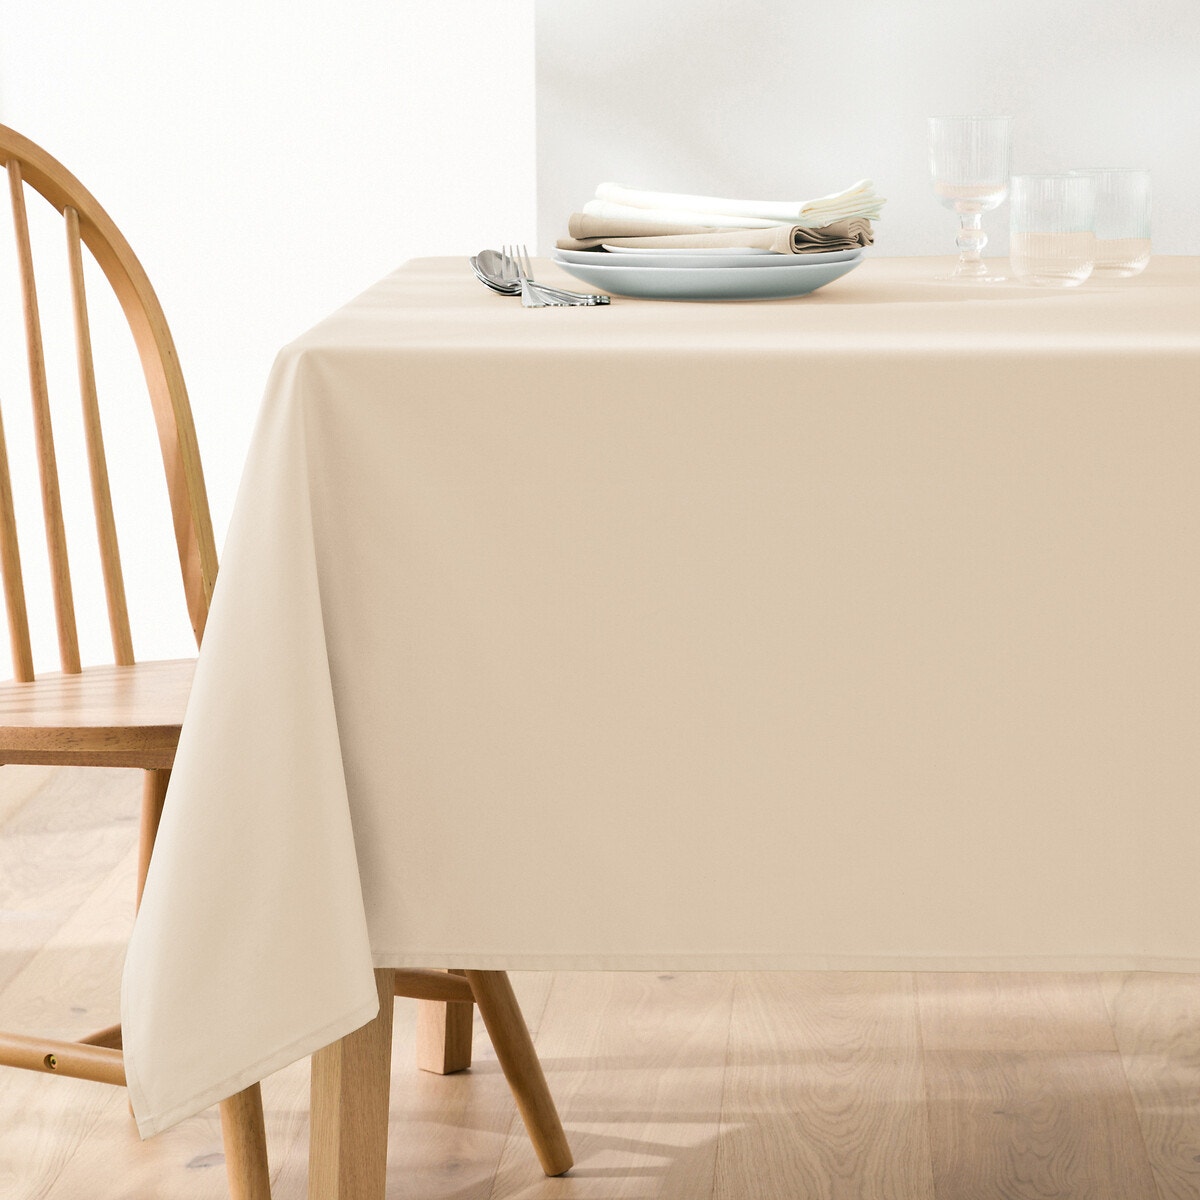 Σπίτι > Λευκά είδη > Κουζίνα > Τραπεζομάντηλα Βαμβακερό τραπεζομάντηλο με απαλή υφή 150x150 cm